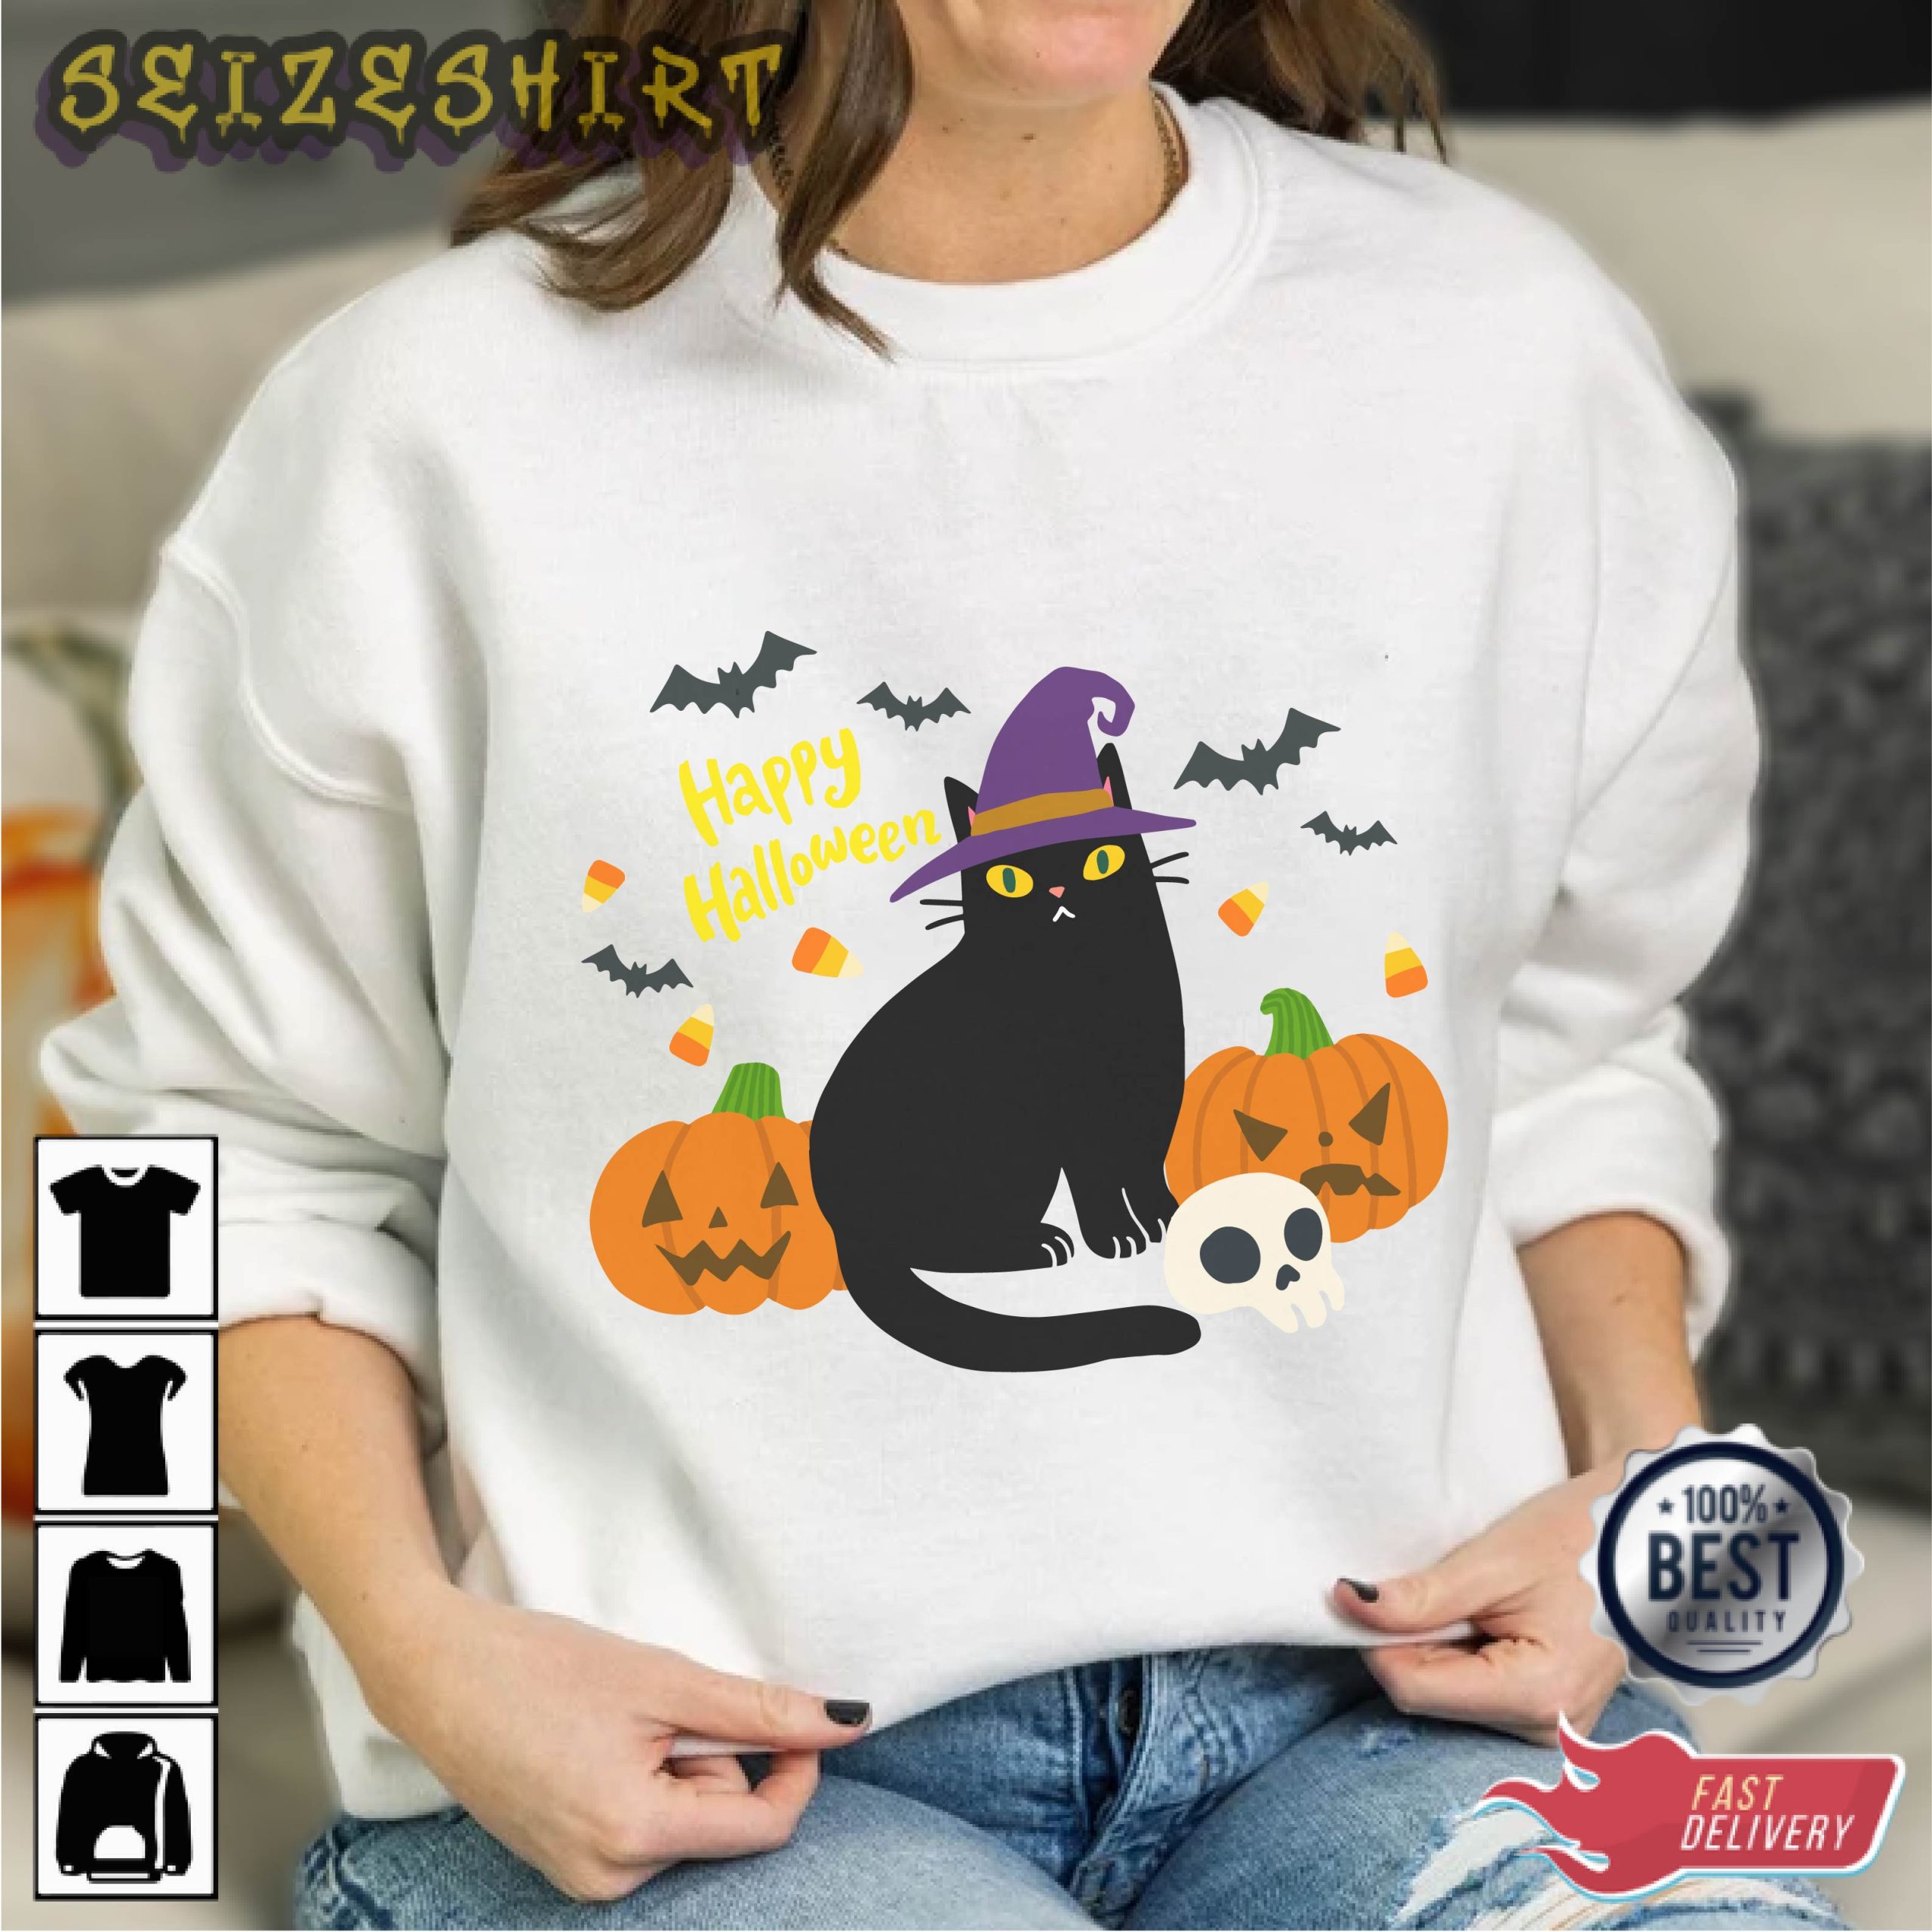 Black Cat Wear Hat Pumpkin Halloween Graphic Tee